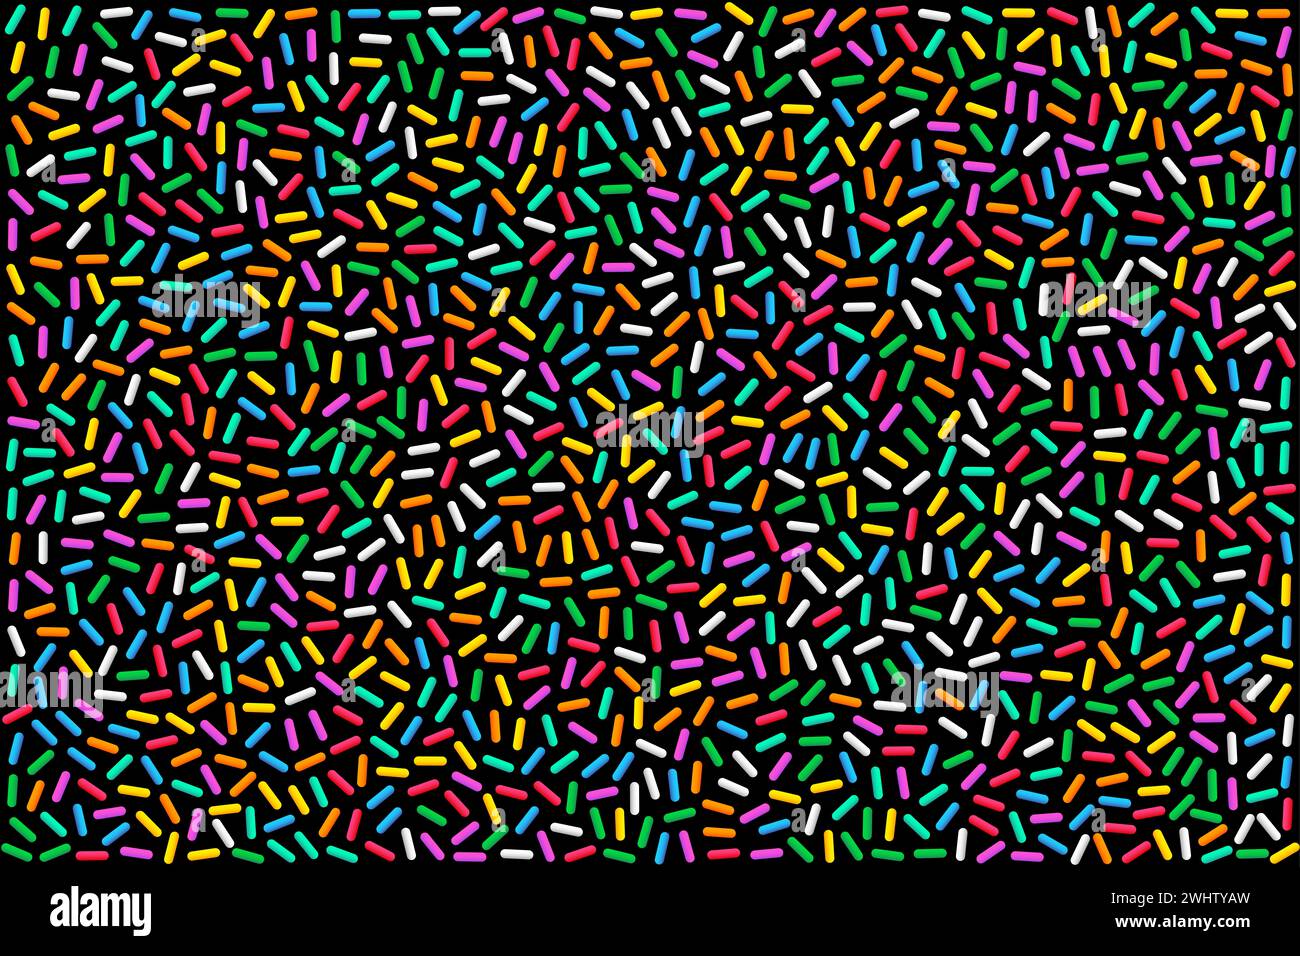 Bunte Regenbogenstreusel, Illustration auf schwarzem Hintergrund. Bunte, stabförmige Zuckerstreusel, kleine Süßigkeiten in verschiedenen Farben. Stockfoto